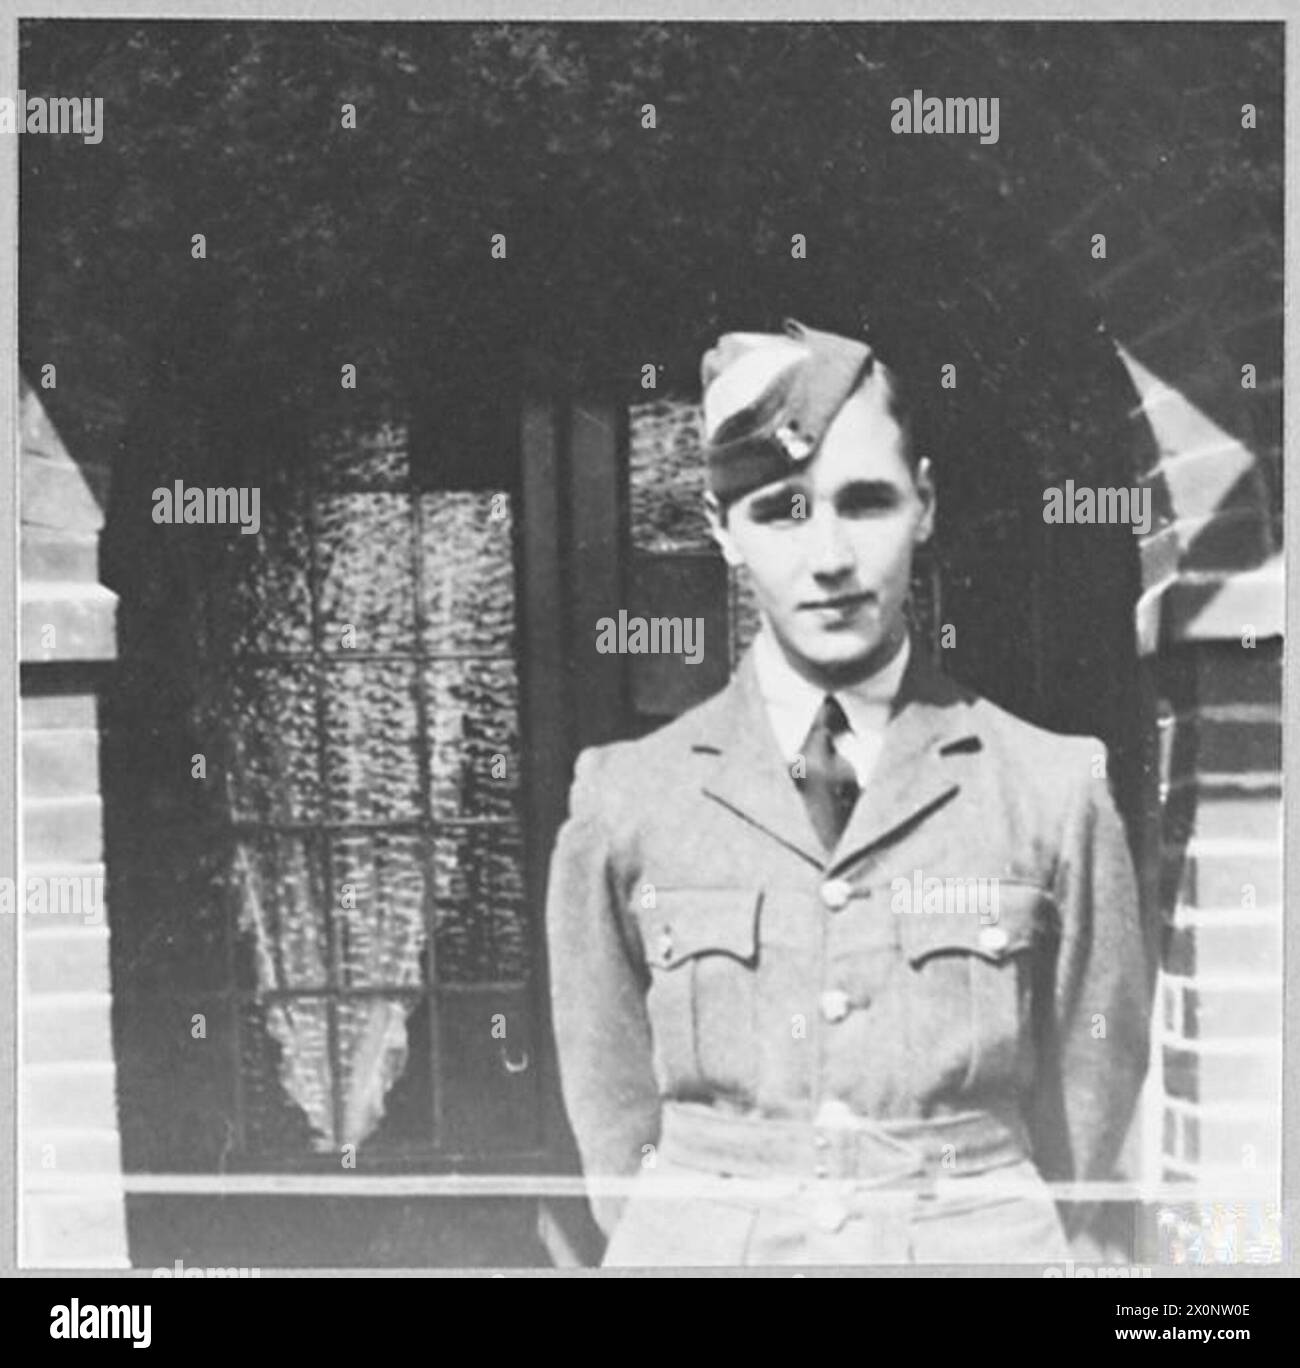 VOM A.T.C. KADETT ZUM FLUGLEHRER - Robert Sidney Salmon von 146 City Way, Rochester, war ein Angestellter bei Messrs. Short Brothers Ltd., Flugzeugbau, bevor er der R.A.F. beitrat. Im Februar 1941 wurde er ein A.T.C. Kadett in No.213 (City of Rochester) ATC Squadron. er erhielt sein Befähigungszeugnis Teil I und wurde zum Flight Sergeant ernannt. Im Juli 1942 trat er der R.A.T.C. Salisbury in Rhodesien bei und erhielt den Silberpokal für den besten Allround-Kadett bei der Ausscheidungsparade des Commanding Officer. Salmon wurde am 25. März 1924 in Sir Joseph Willia geboren Stockfoto